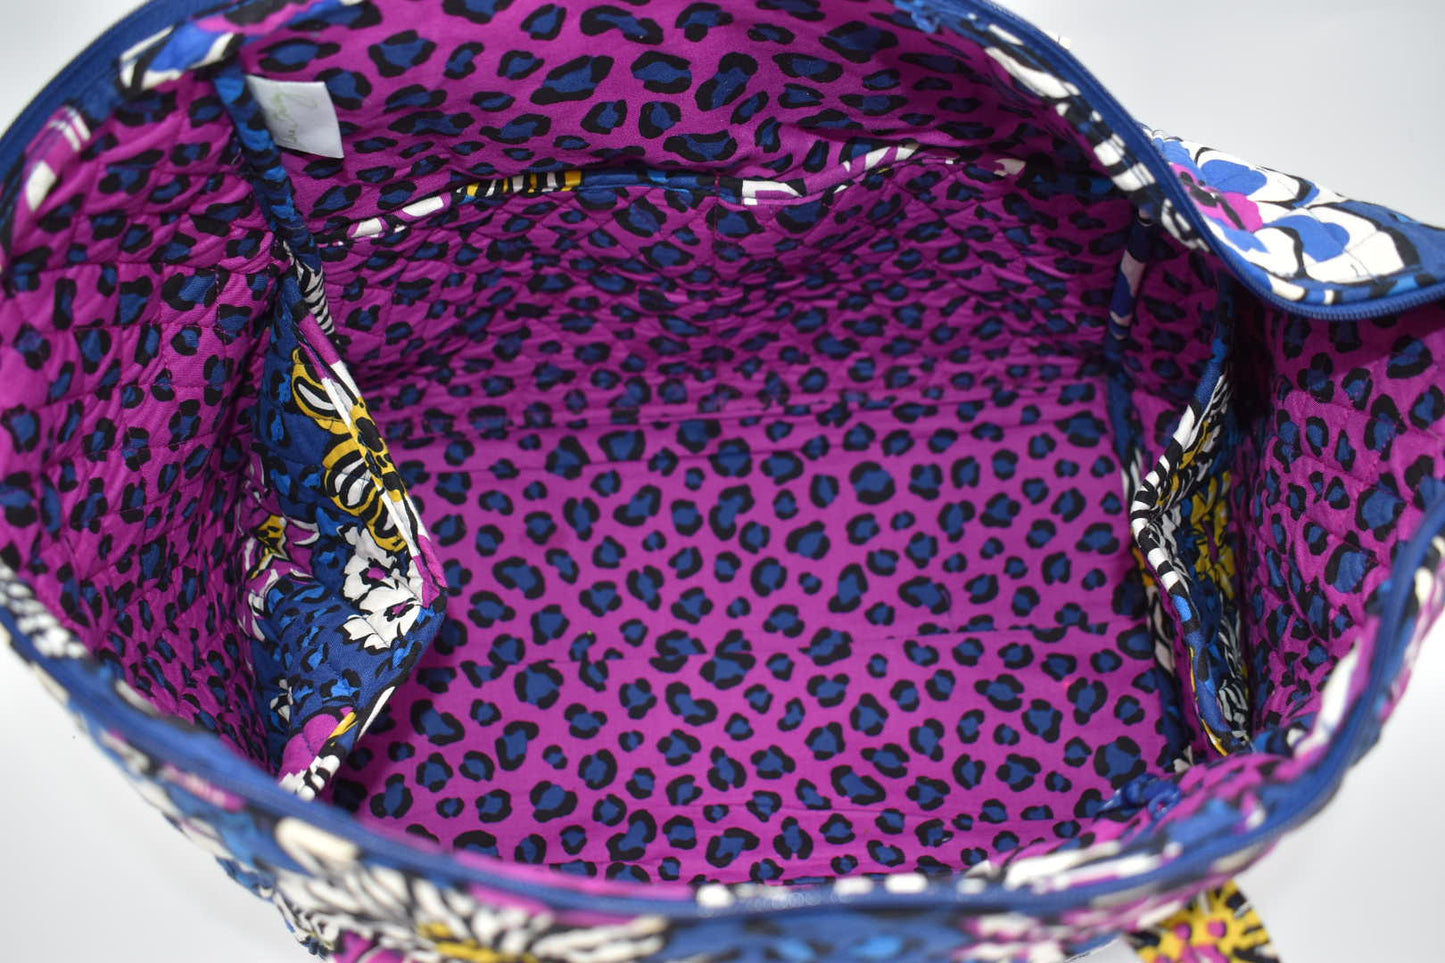 Vera Bradley Weekender Travel Tote Bag in African Violet